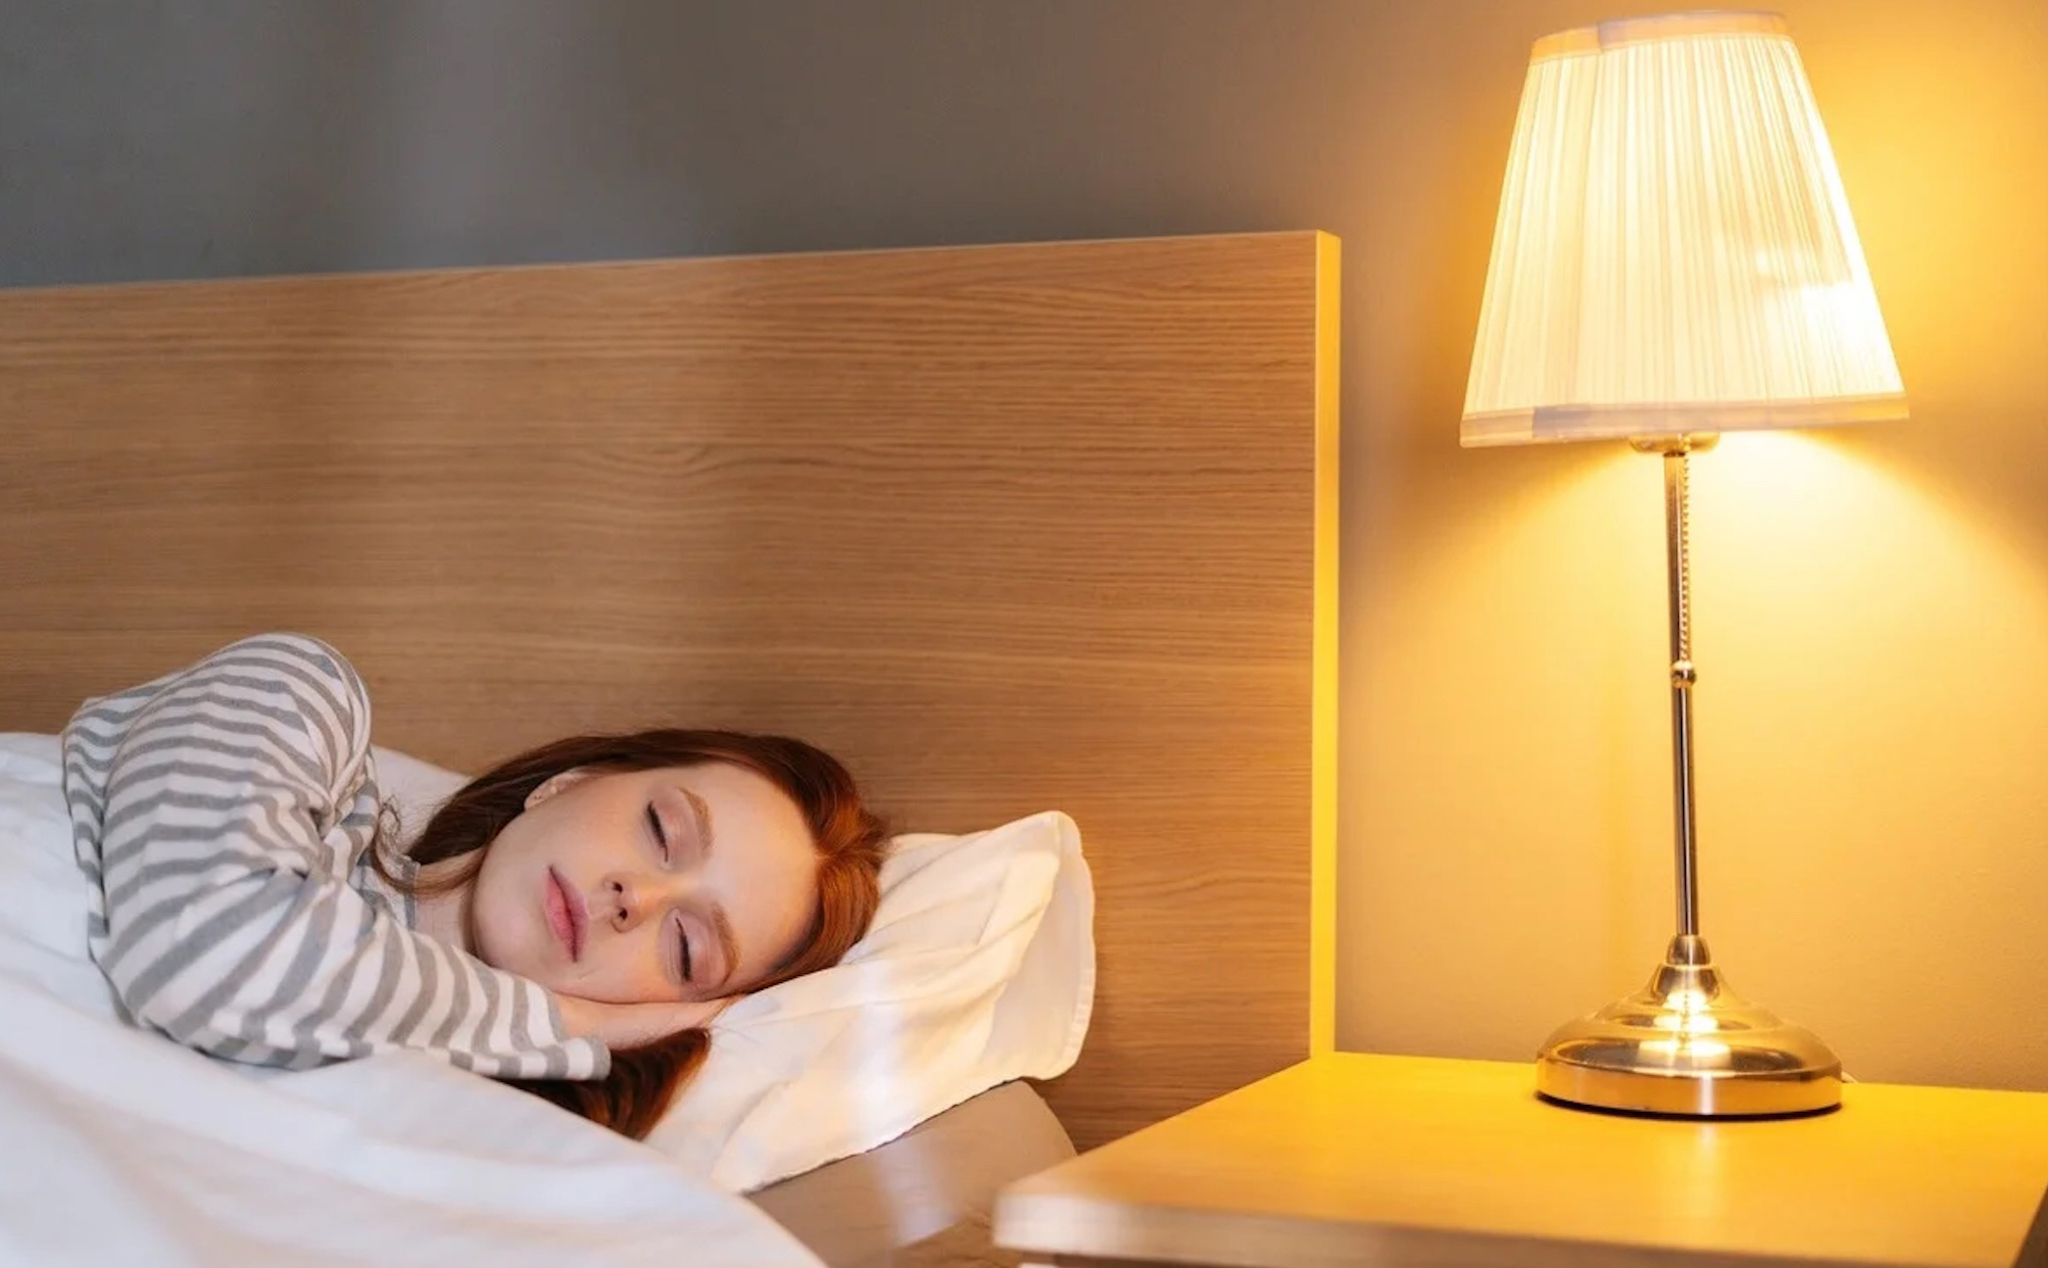 Tại sao mở đèn khi ngủ có hại cho sức khoẻ?